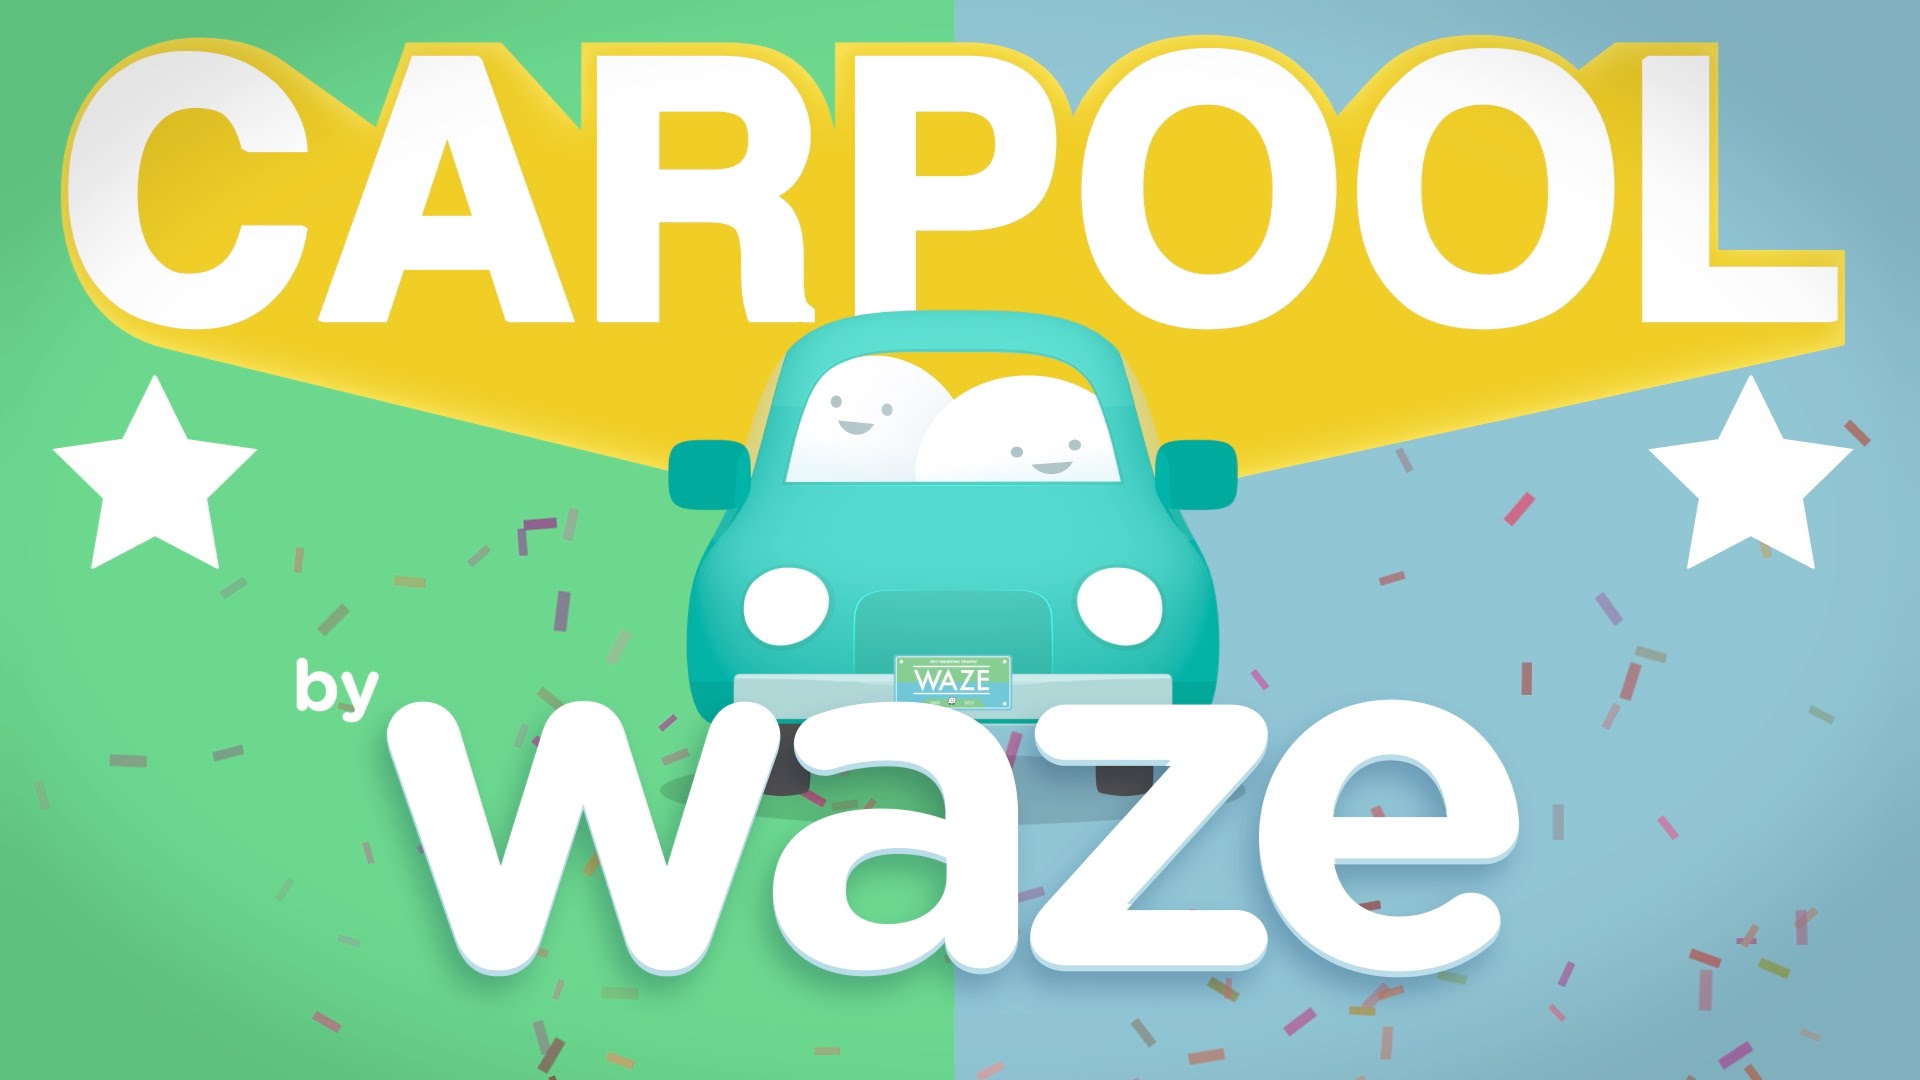 waze-carpool